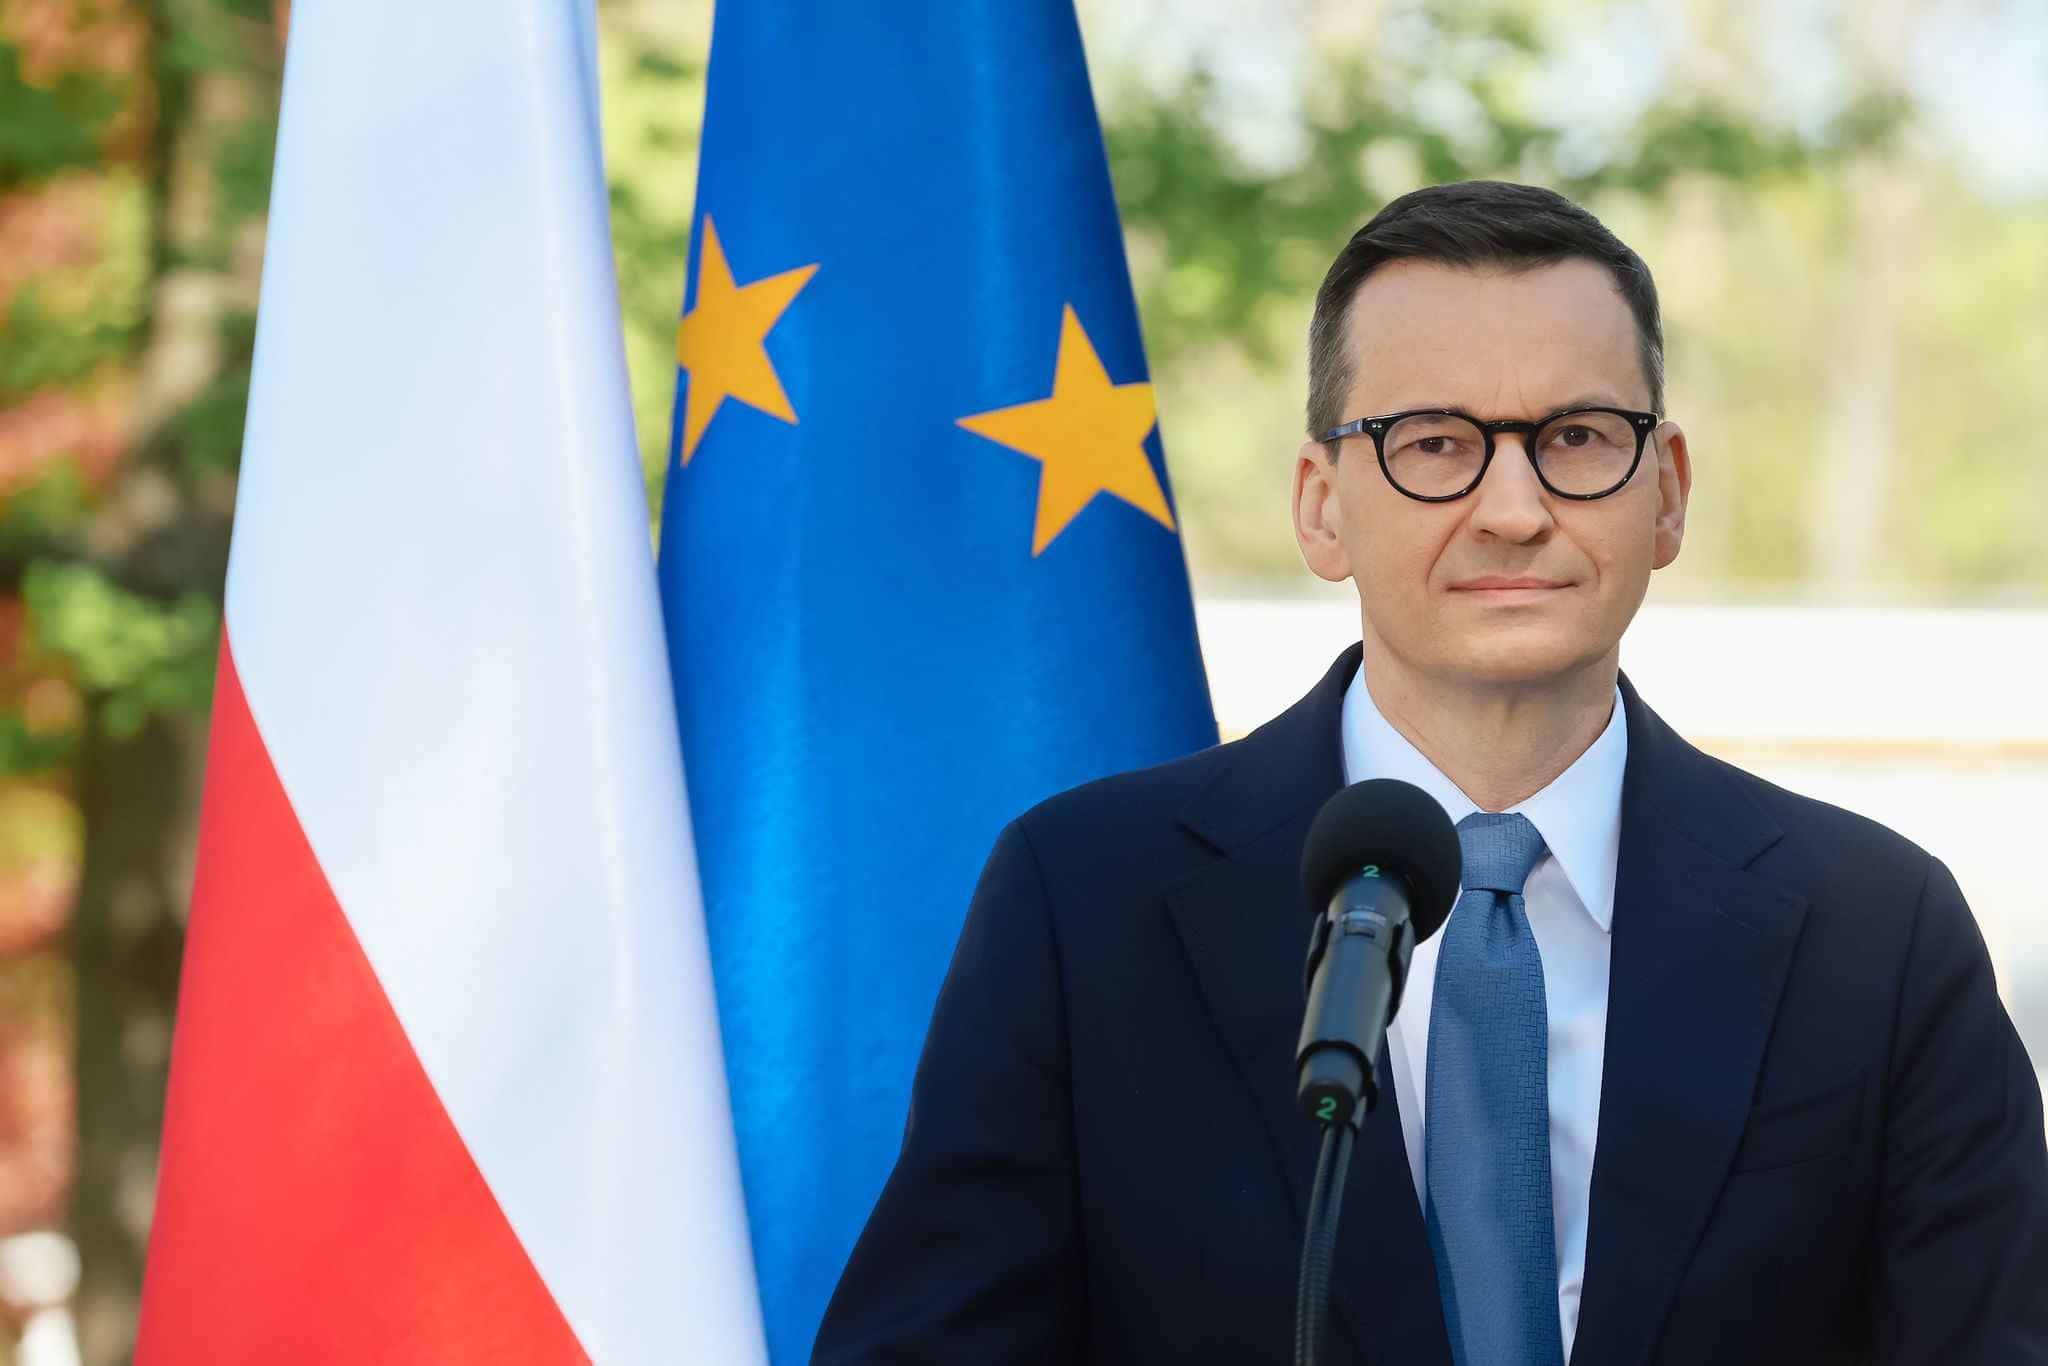 Morawiecki lehnt Versuche des Europäischen Parlaments ab, Druck auf Ungarn auszuüben